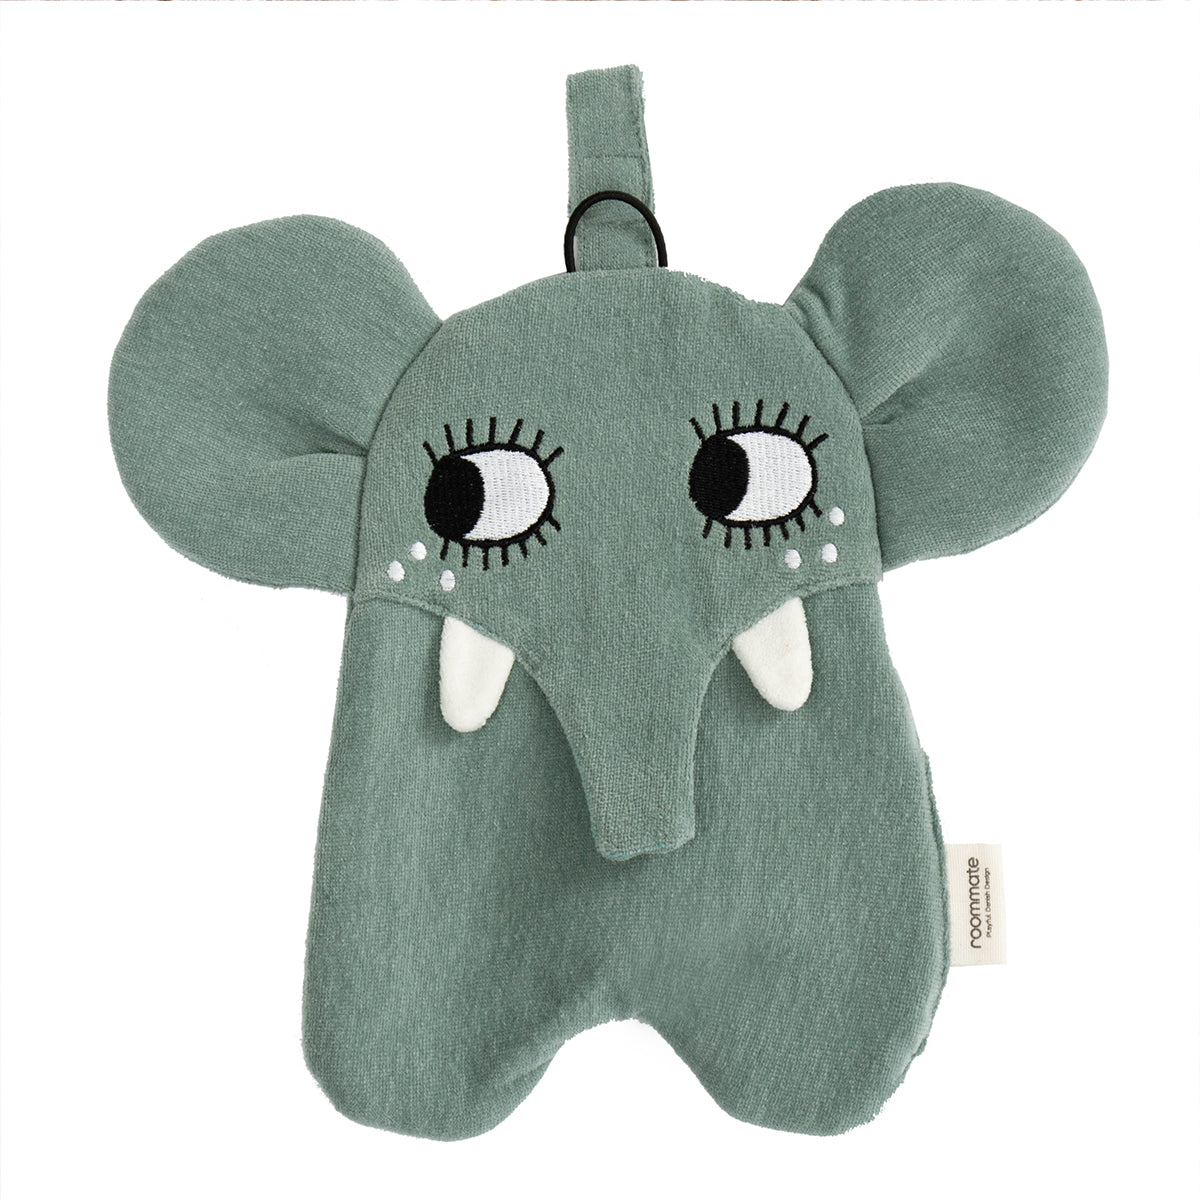 Het speendoekje olifant van Roommate: het vertrouwde en zachte vriendje van jouw kindje. De speen is eenvoudig te bevestigen aan het lapje. Met het doekje geef je jouw kindje iets om mee te spelen én te knuffelen. VanZus